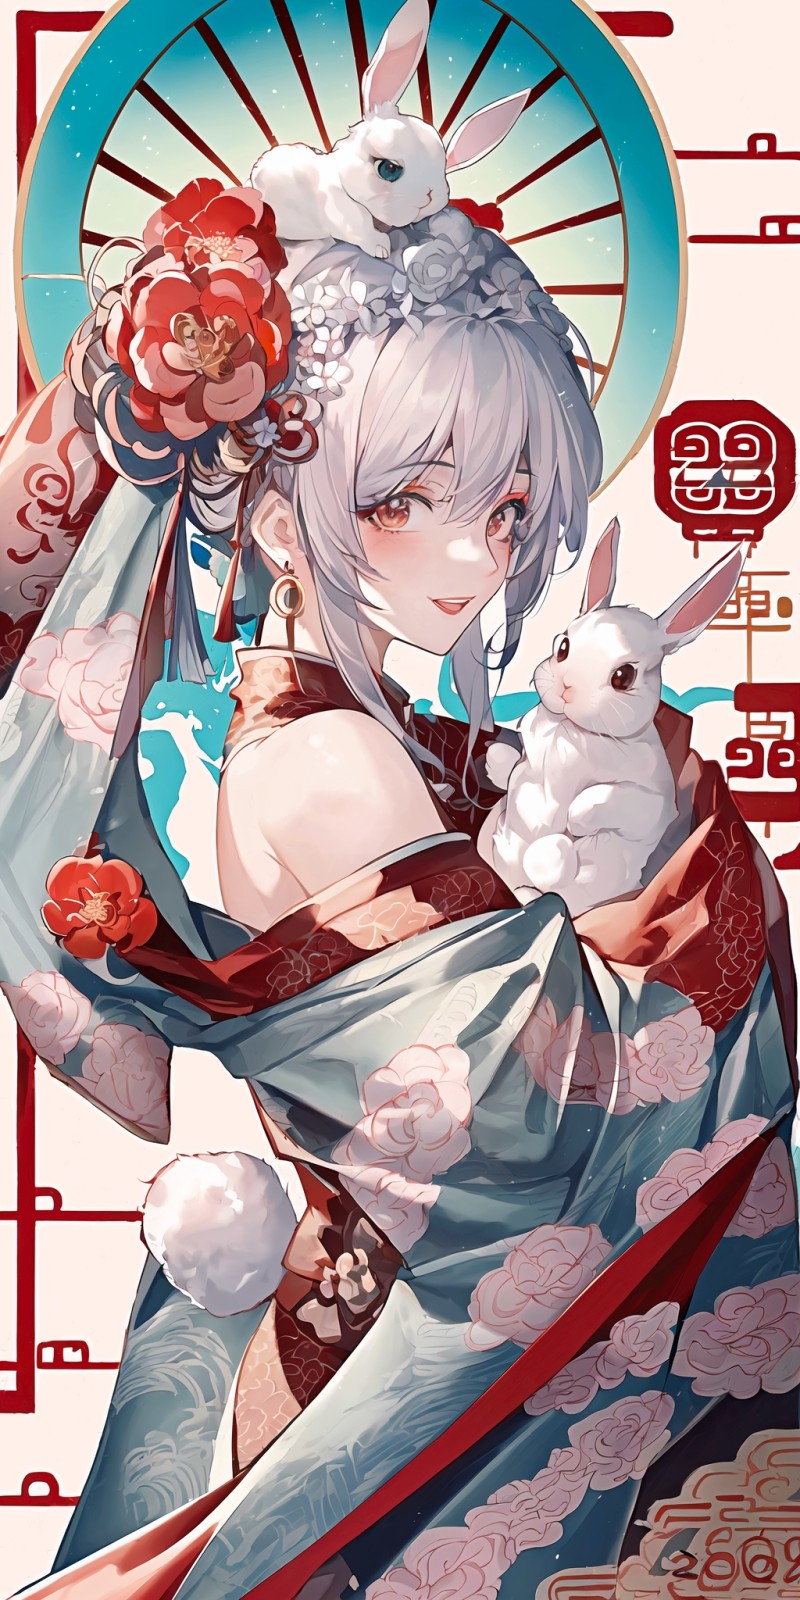 Anime, Anime Girls, Portrait Display, Flower in Hair, Rabbits Wallpaper